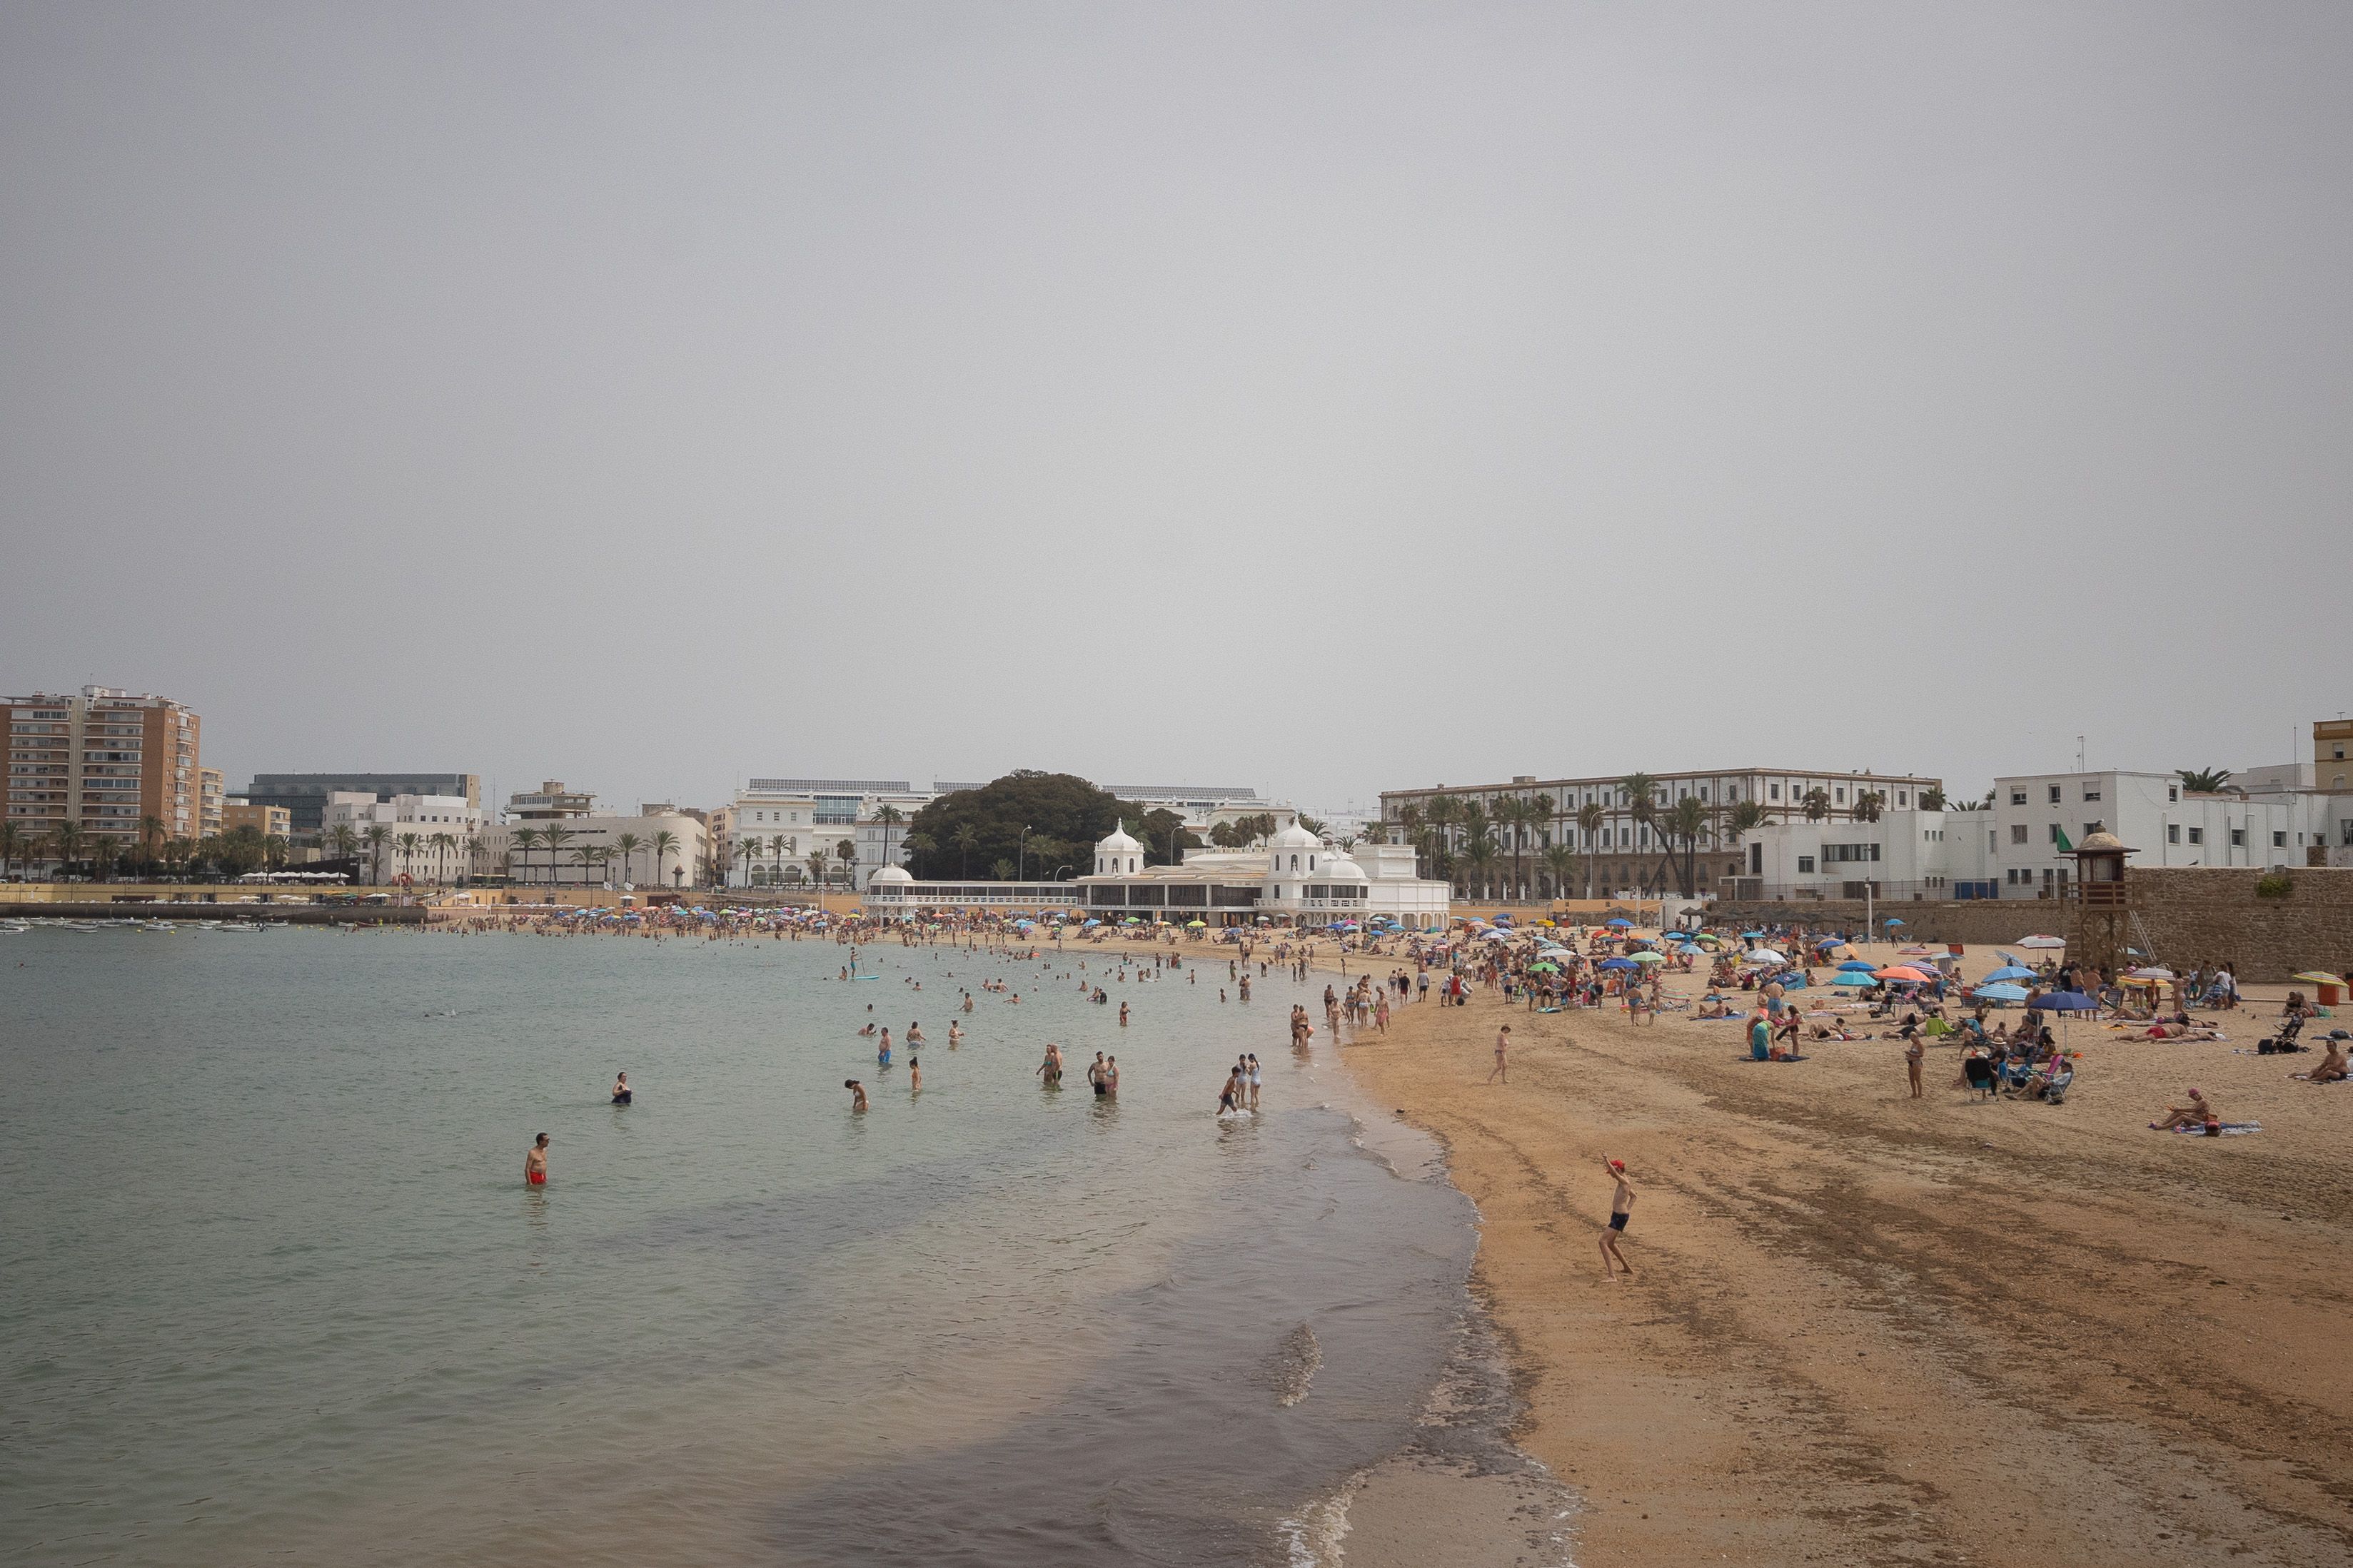 Calor un día nublado en la playa de la Caleta de Cádiz. Cambios bruscos de tiempo: llegan temperaturas altas con posibles lluvias